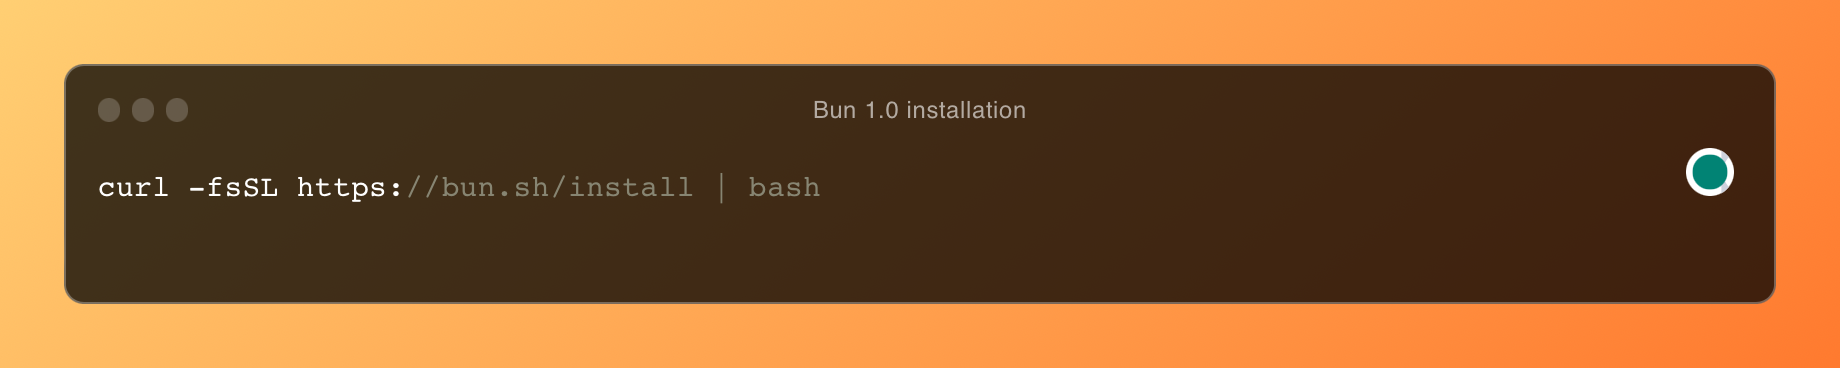 Bun 1.0 Instalacija